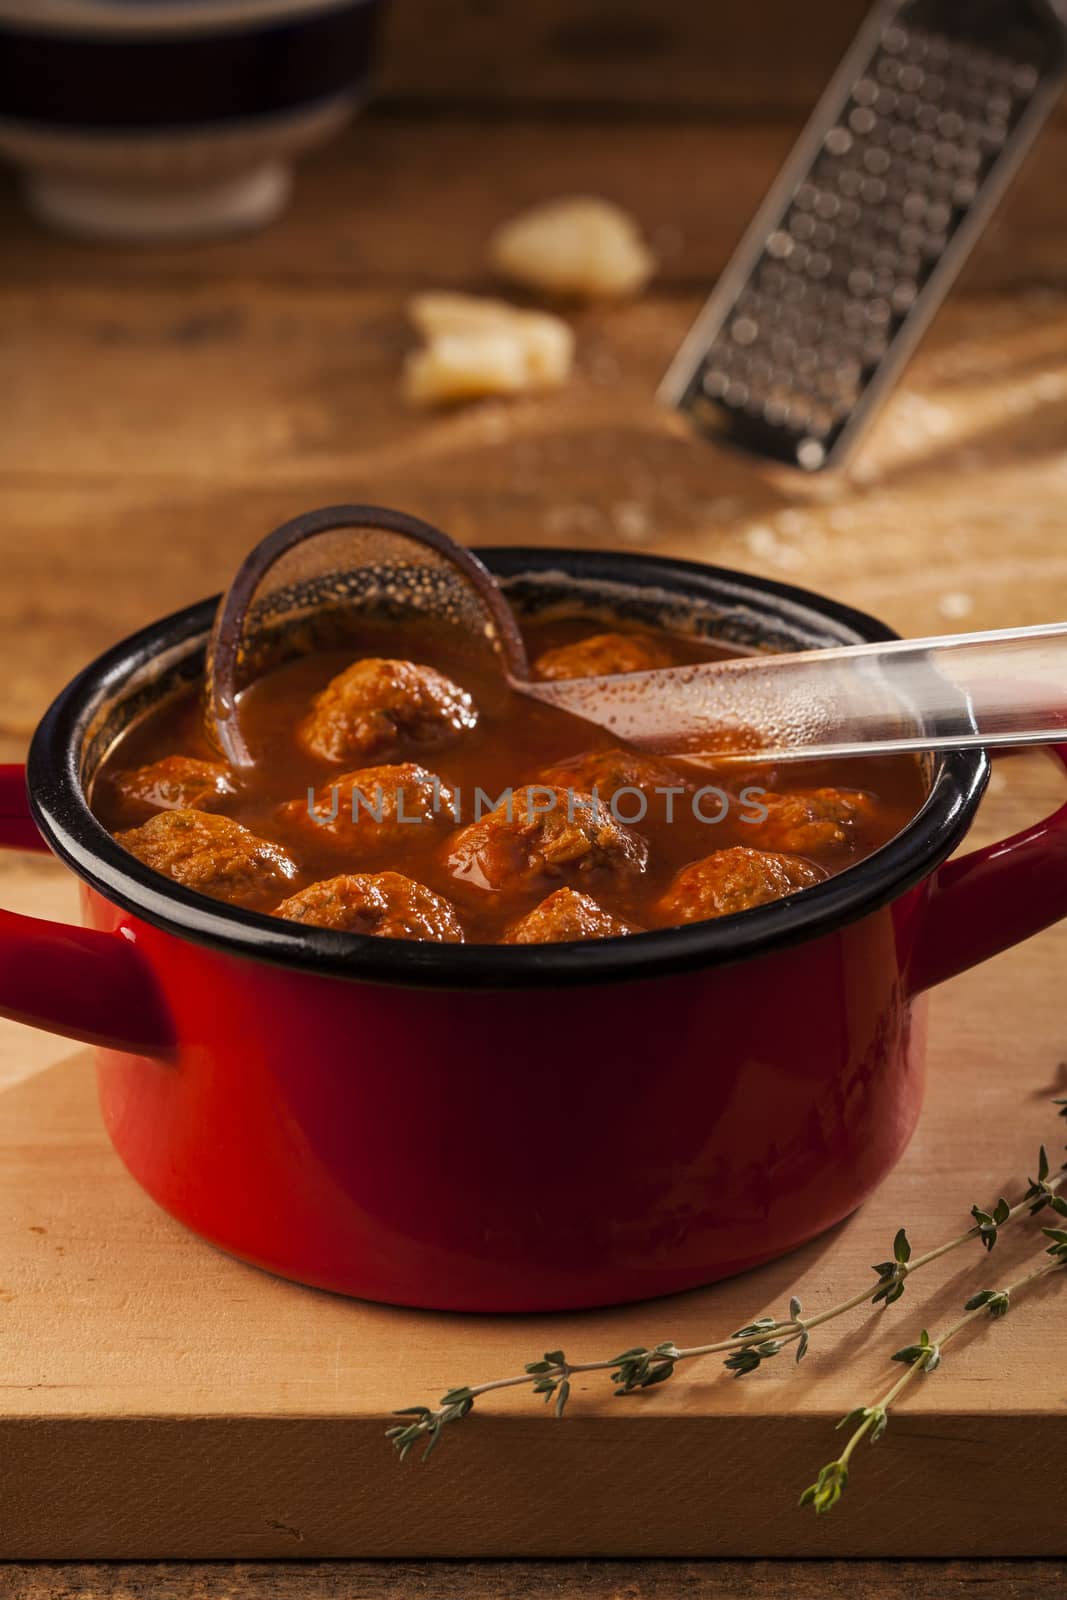 Meatballs in pan by mariakomar